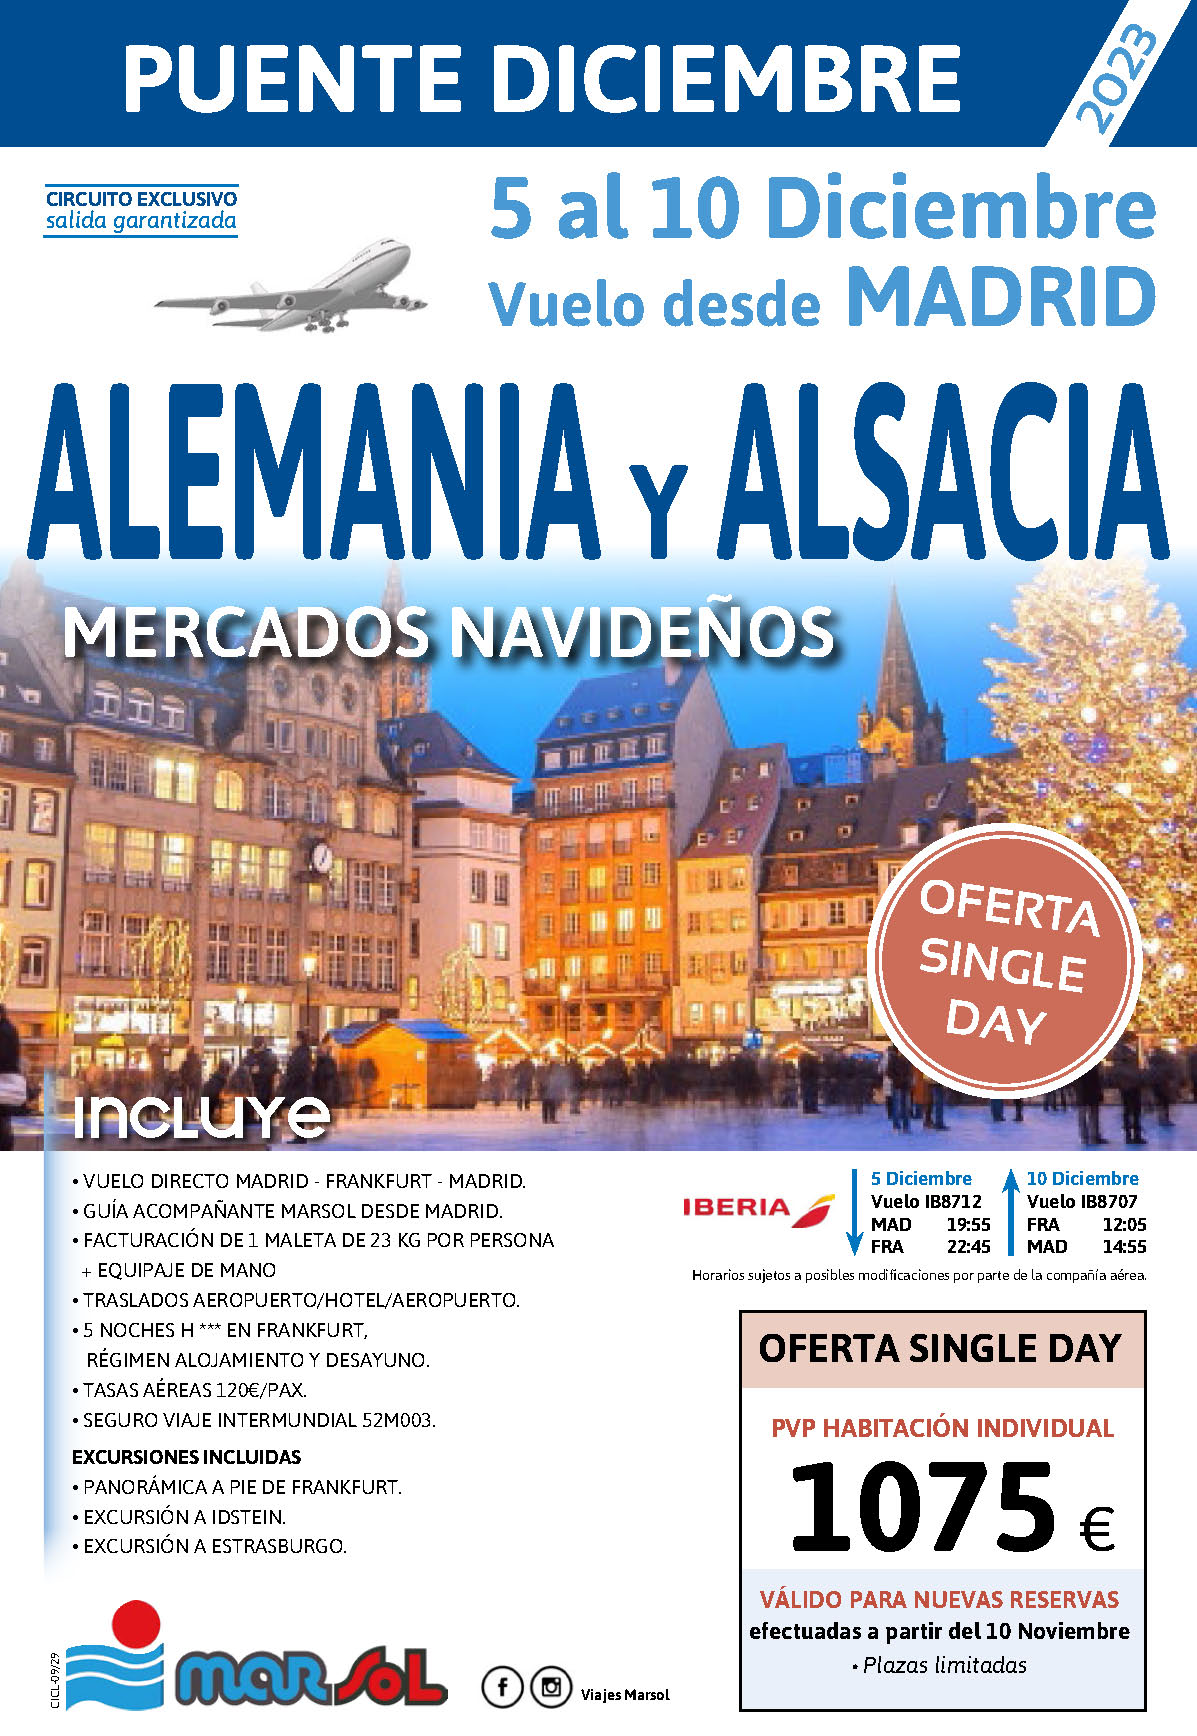 Oferta Marsol Puente de Diciembre 2023 Singles Day Mercados Navideños en Alemania y Alsacia 5 dias salida 6 diciembre vuelo directo desde Madrid